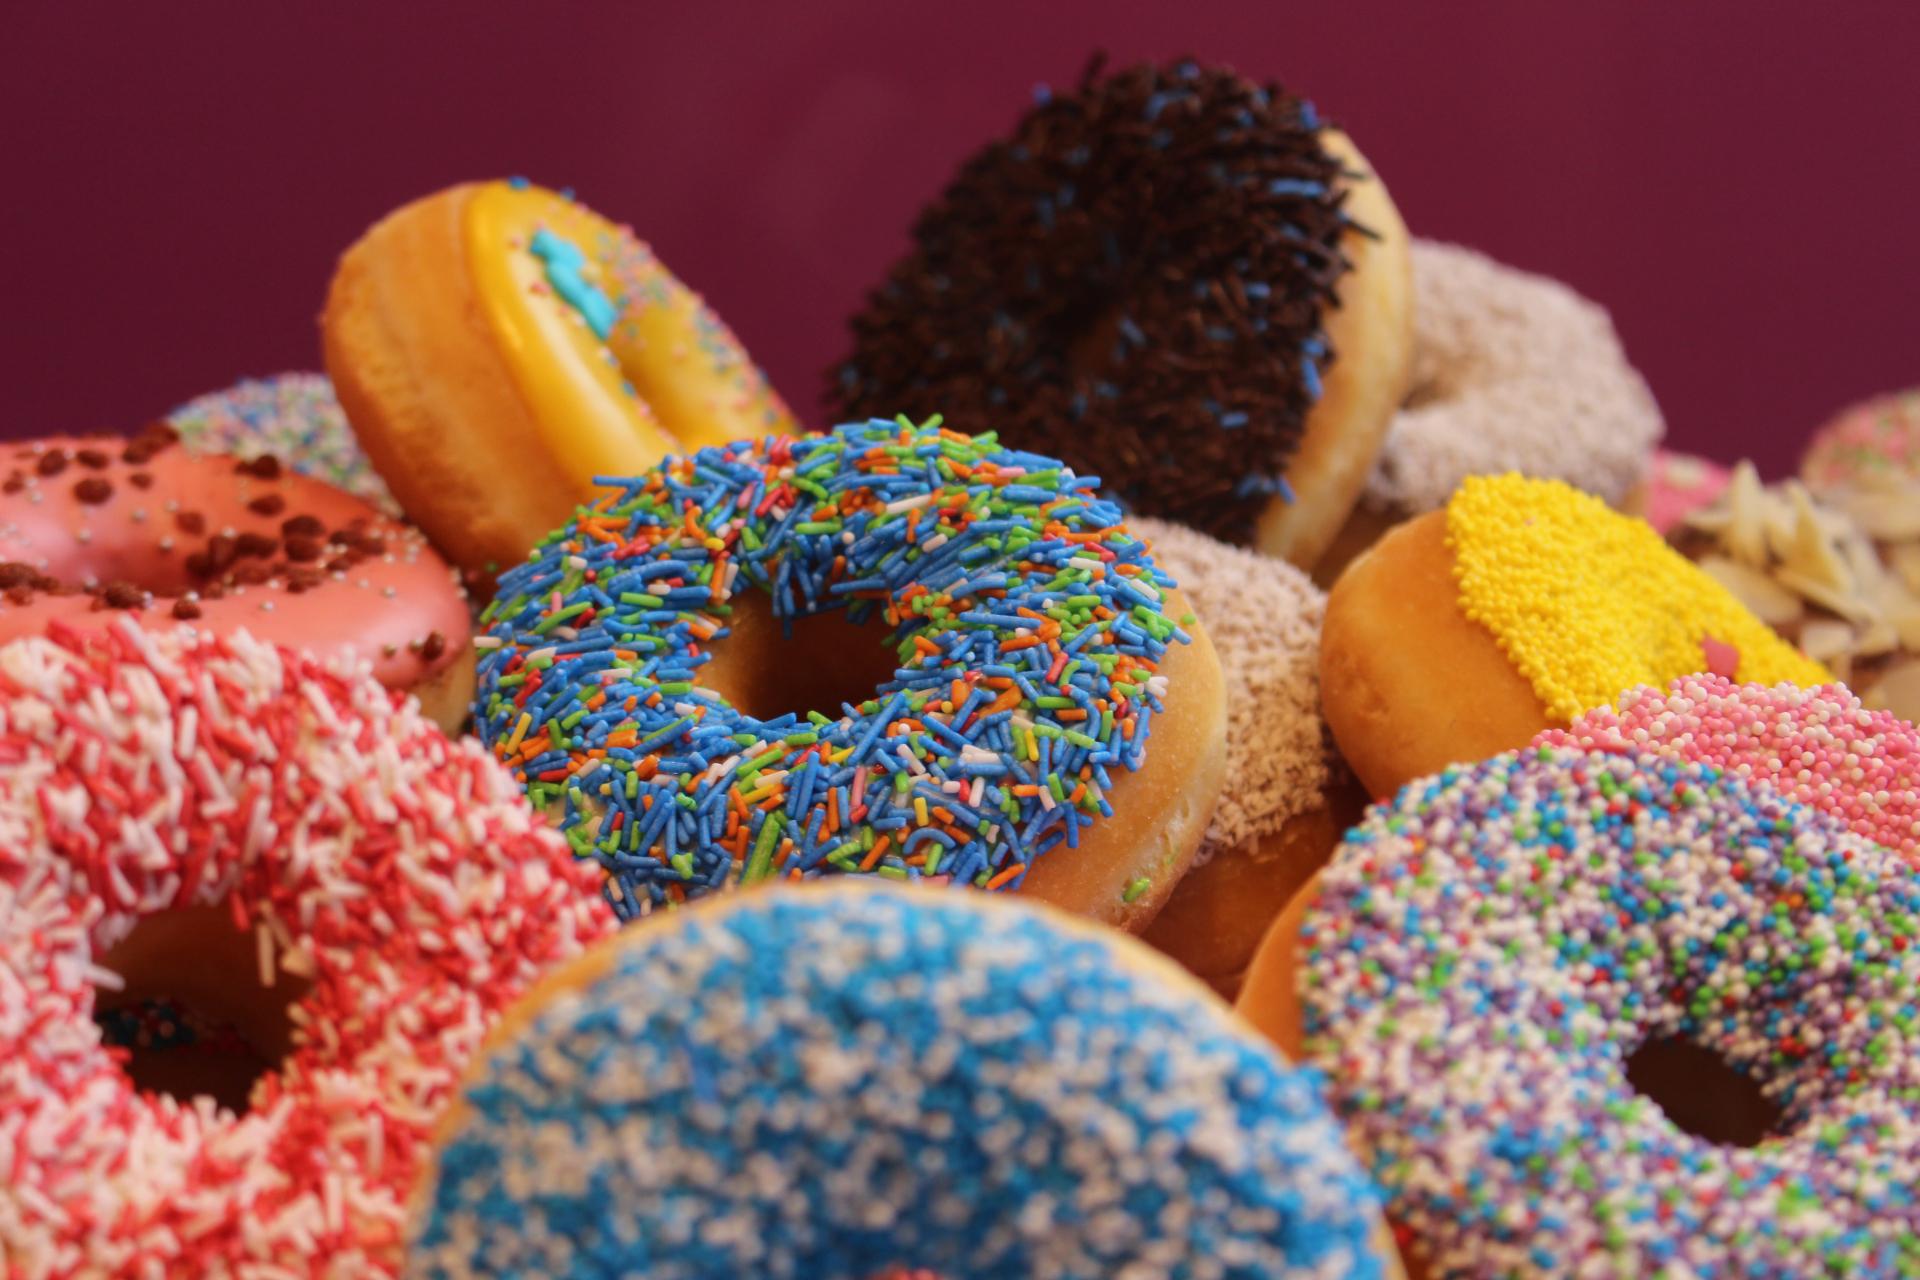 Donuts sind das rein amerikanische Dessert, das die Herzen vieler erobert hat. Es ist definitiv ein tolles Dessert für Coffeeshops